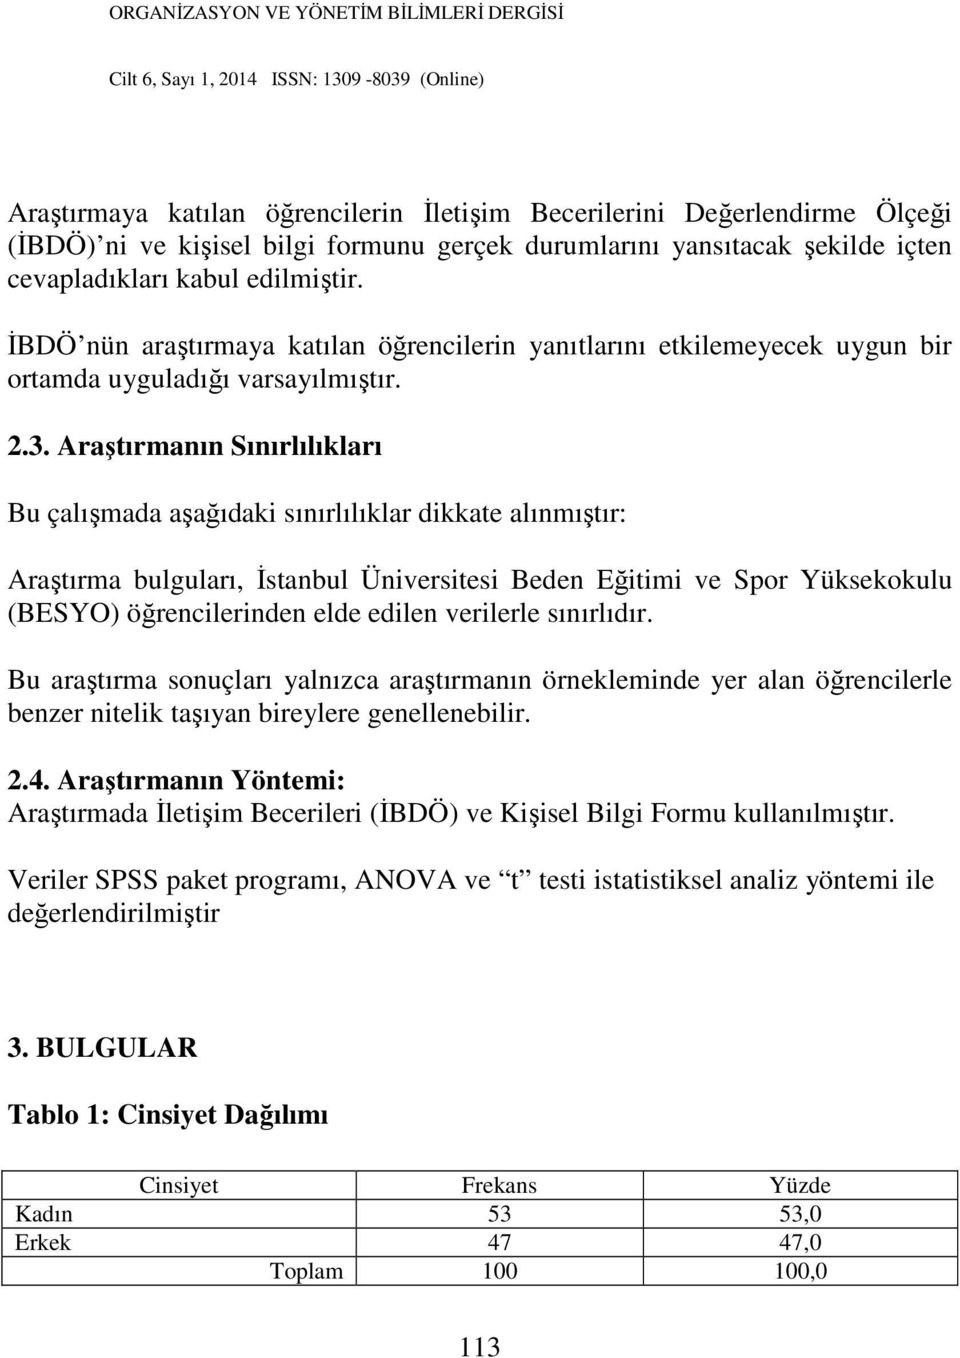 Araştırmanın Sınırlılıkları Bu çalışmada aşağıdaki sınırlılıklar dikkate alınmıştır: Araştırma bulguları, İstanbul Üniversitesi Beden Eğitimi ve Spor Yüksekokulu (BESYO) öğrencilerinden elde edilen